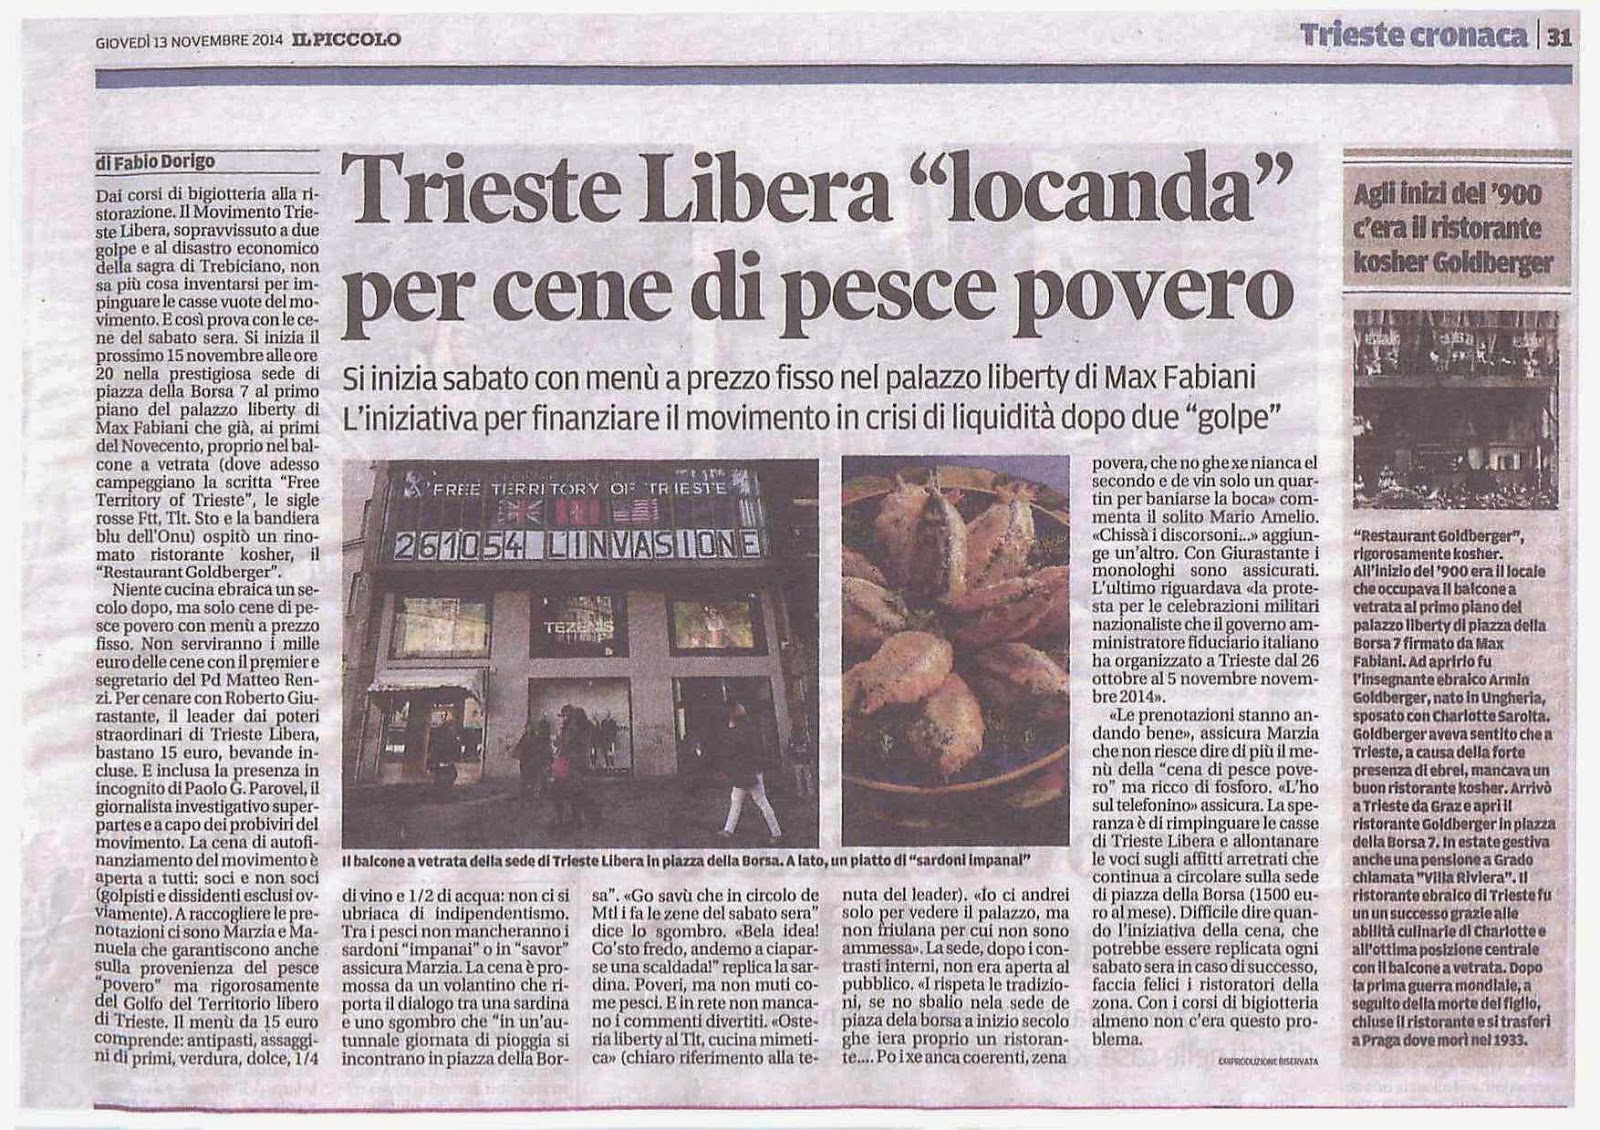 Articolo de Il Piccolo, 13 novembre 2014: una cena sociale di Trieste Libera è derisa in chiave razzista perché il palazzo aveva ospitato un ristorante kosher agli inizi del '900.